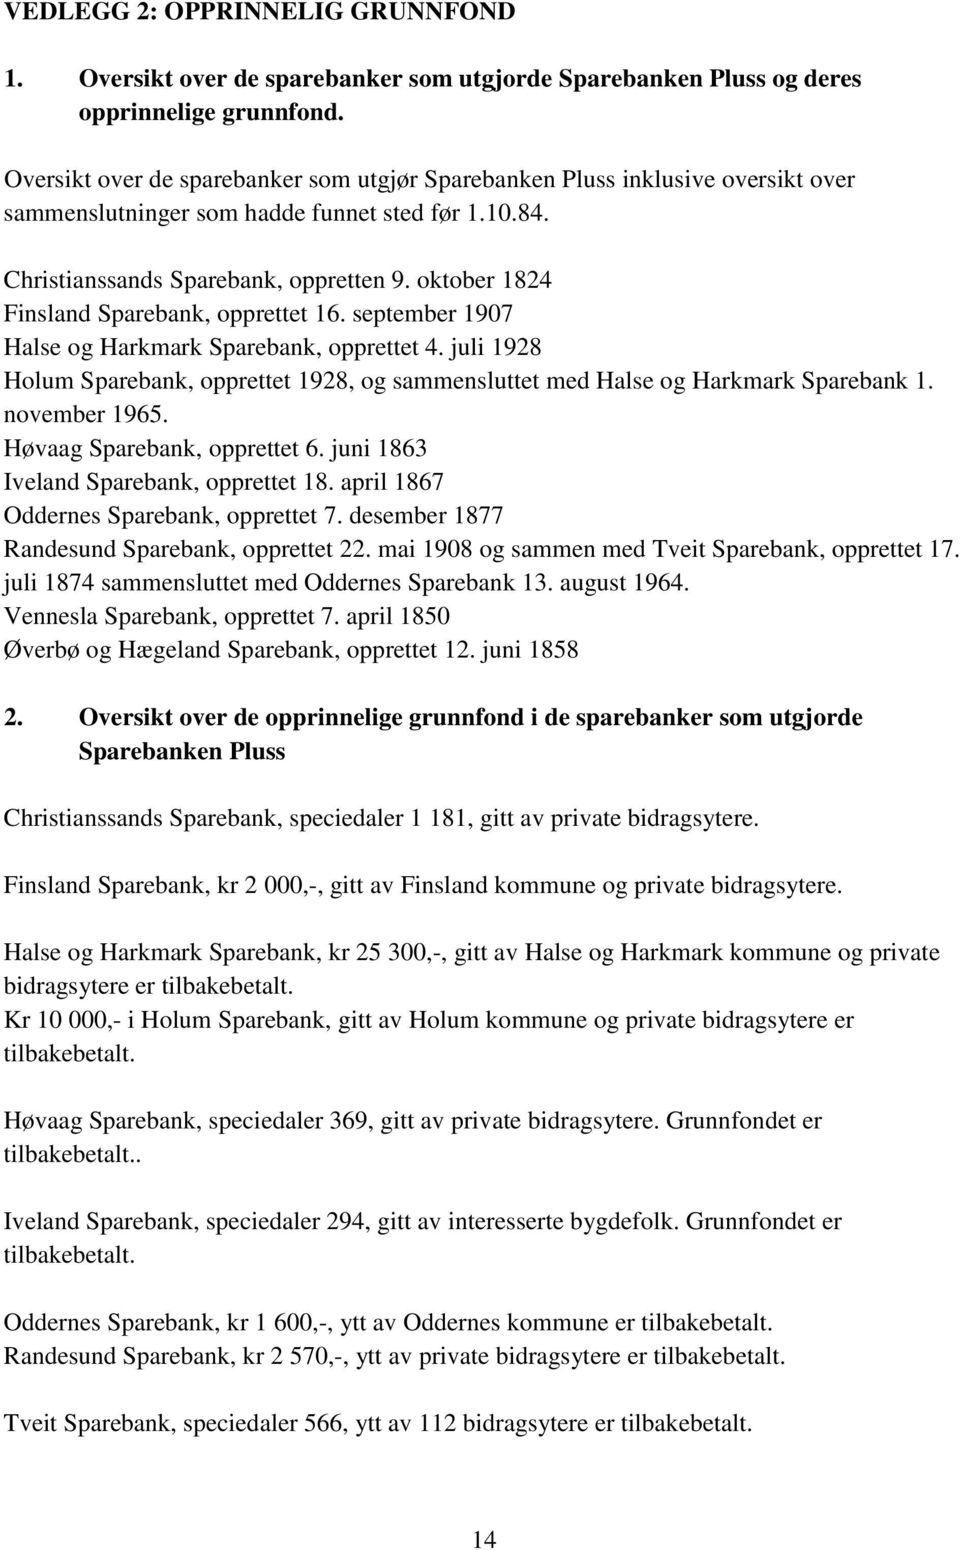 oktober 1824 Finsland Sparebank, opprettet 16. september 1907 Halse og Harkmark Sparebank, opprettet 4. juli 1928 Holum Sparebank, opprettet 1928, og sammensluttet med Halse og Harkmark Sparebank 1.